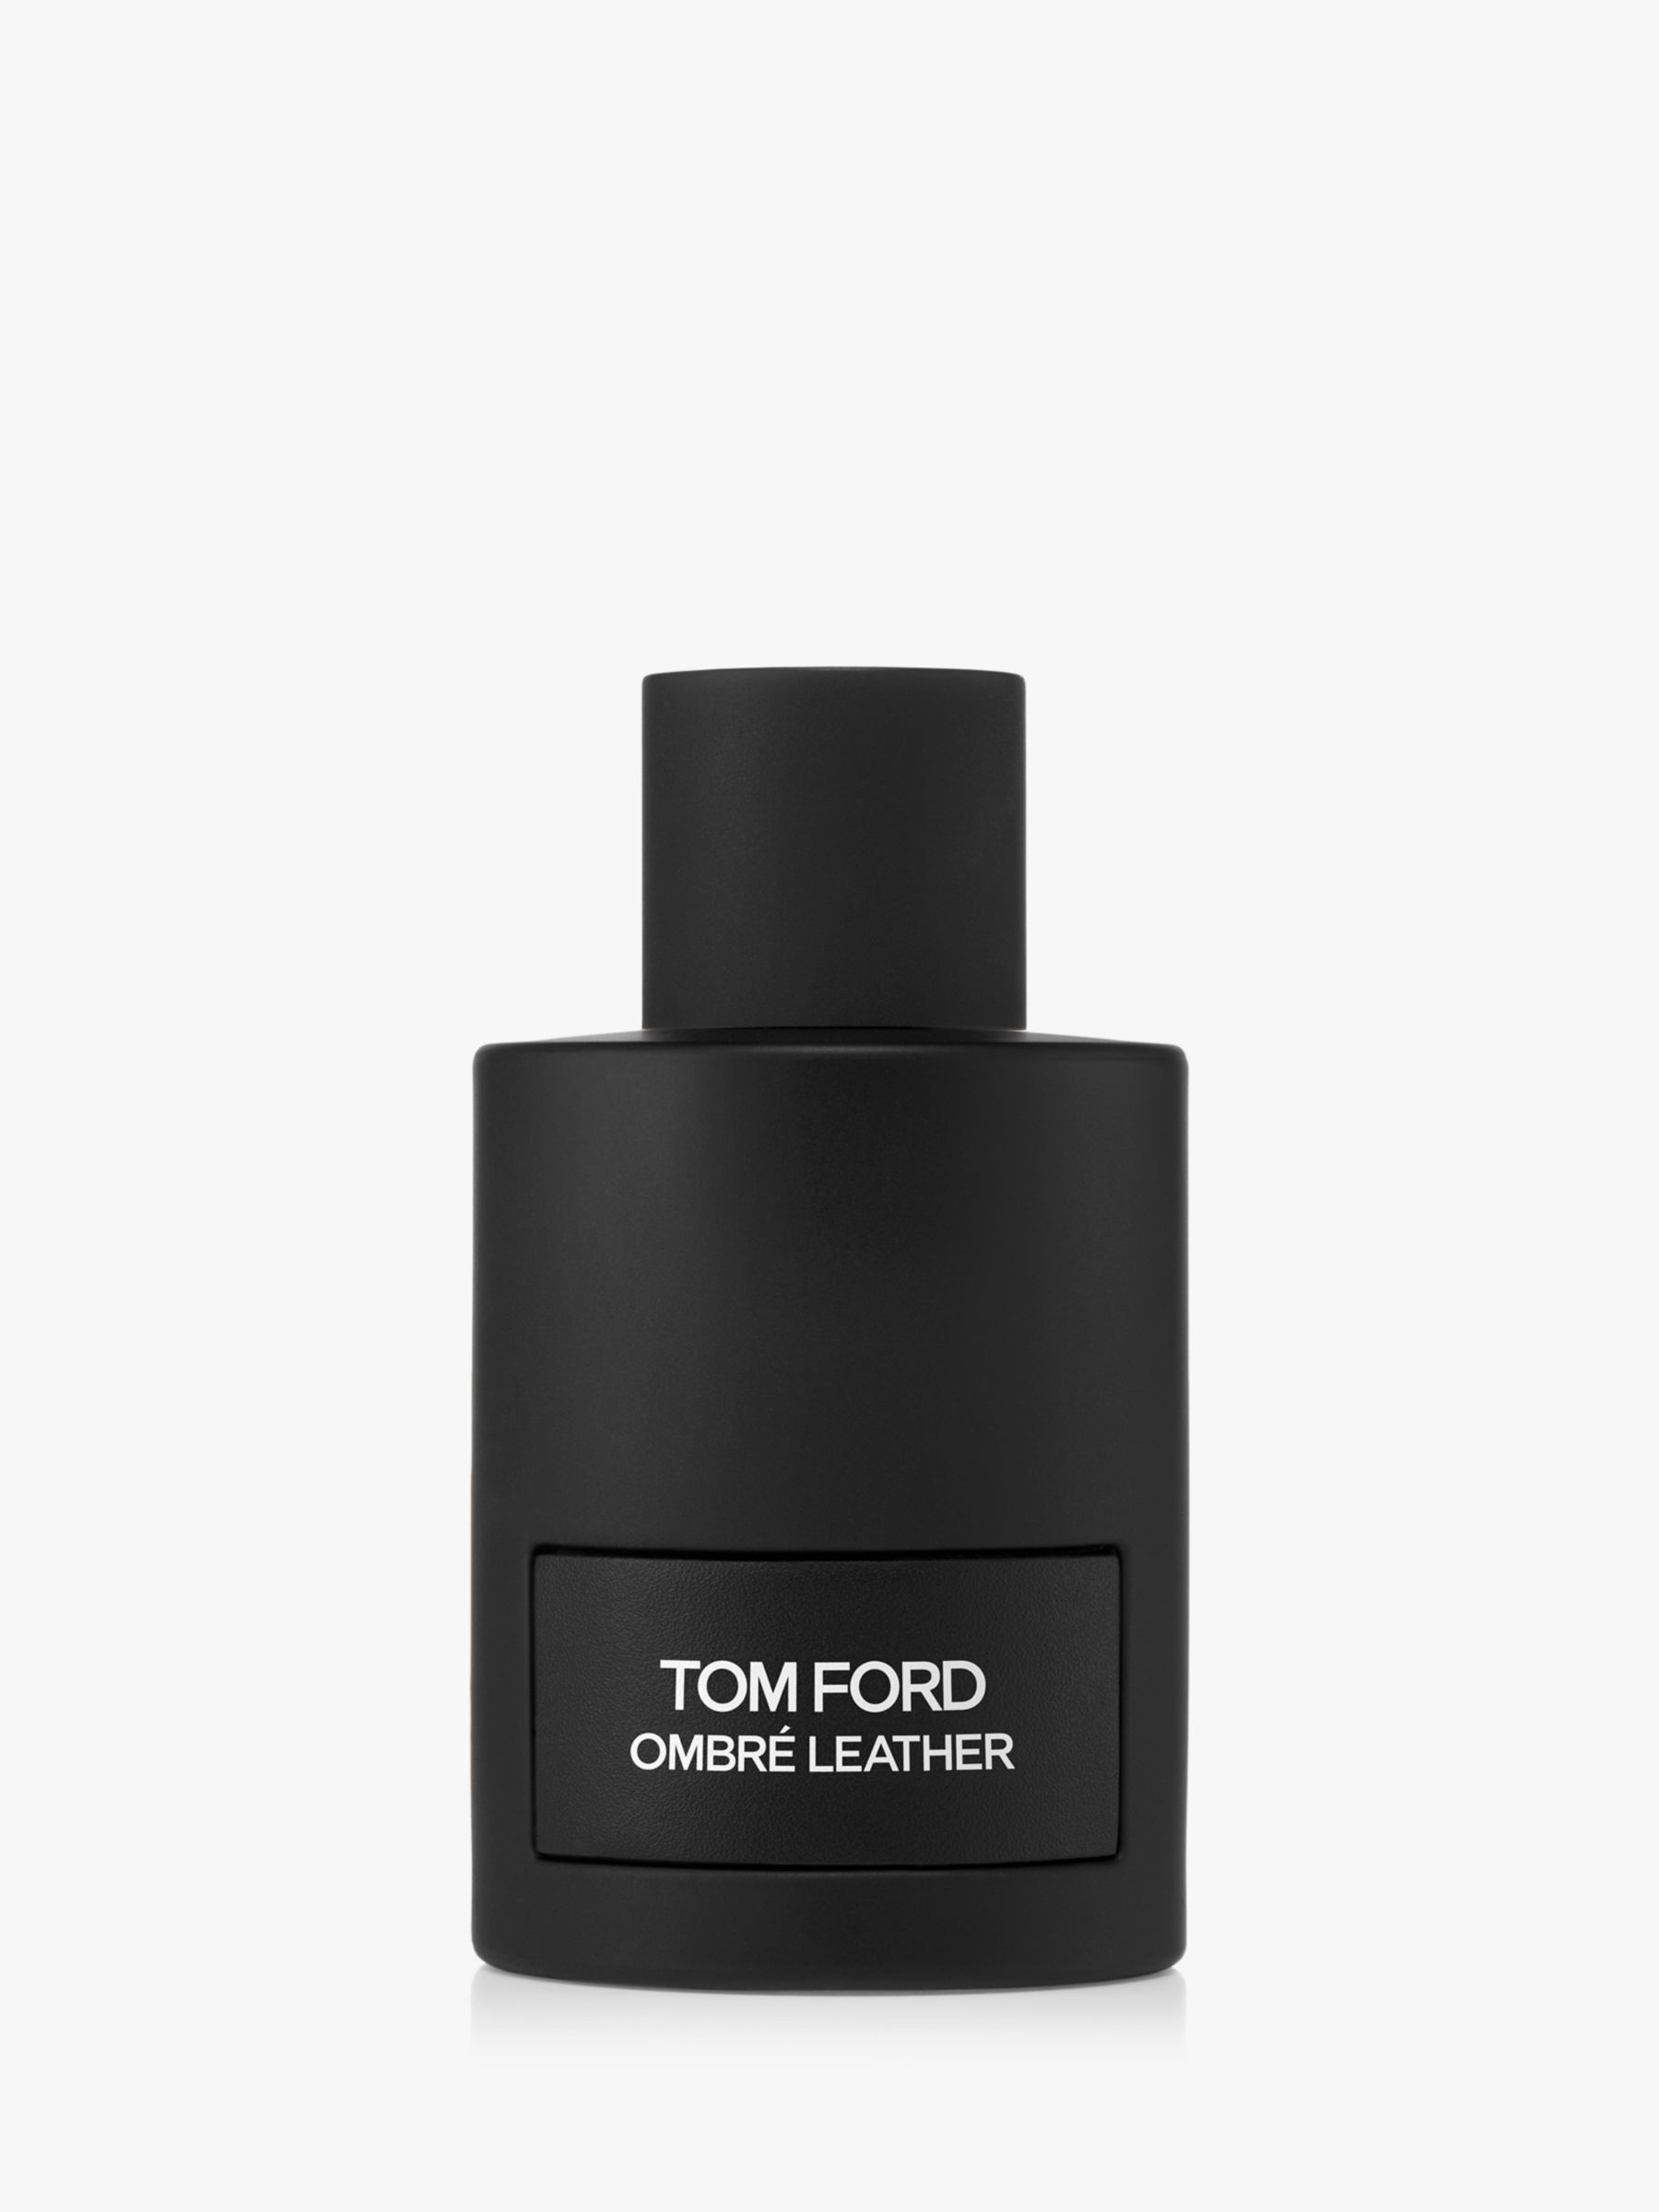 TOM FORD Ombré Leather Eau de Parfum, 100ml